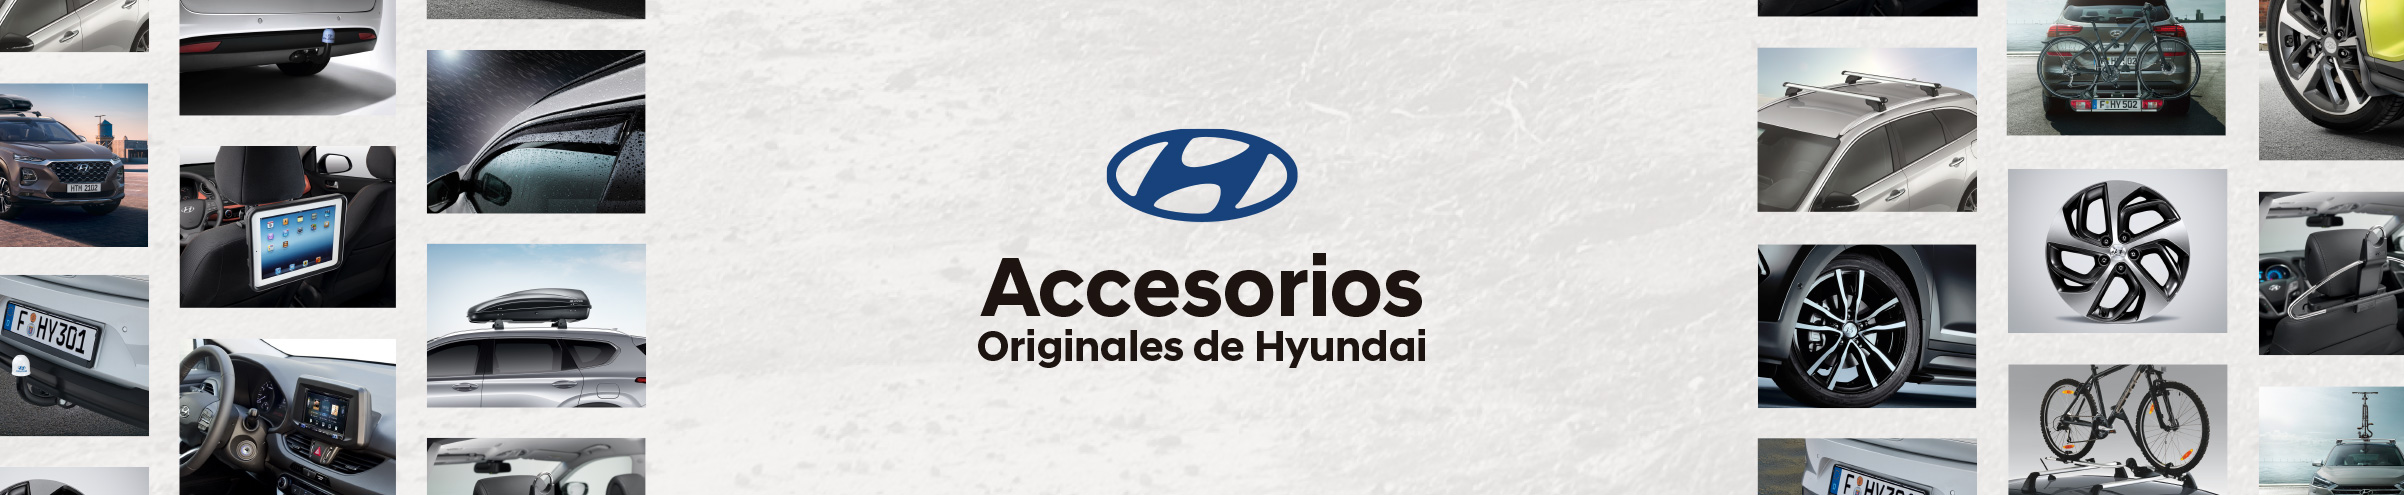 Hyundai Accesorios